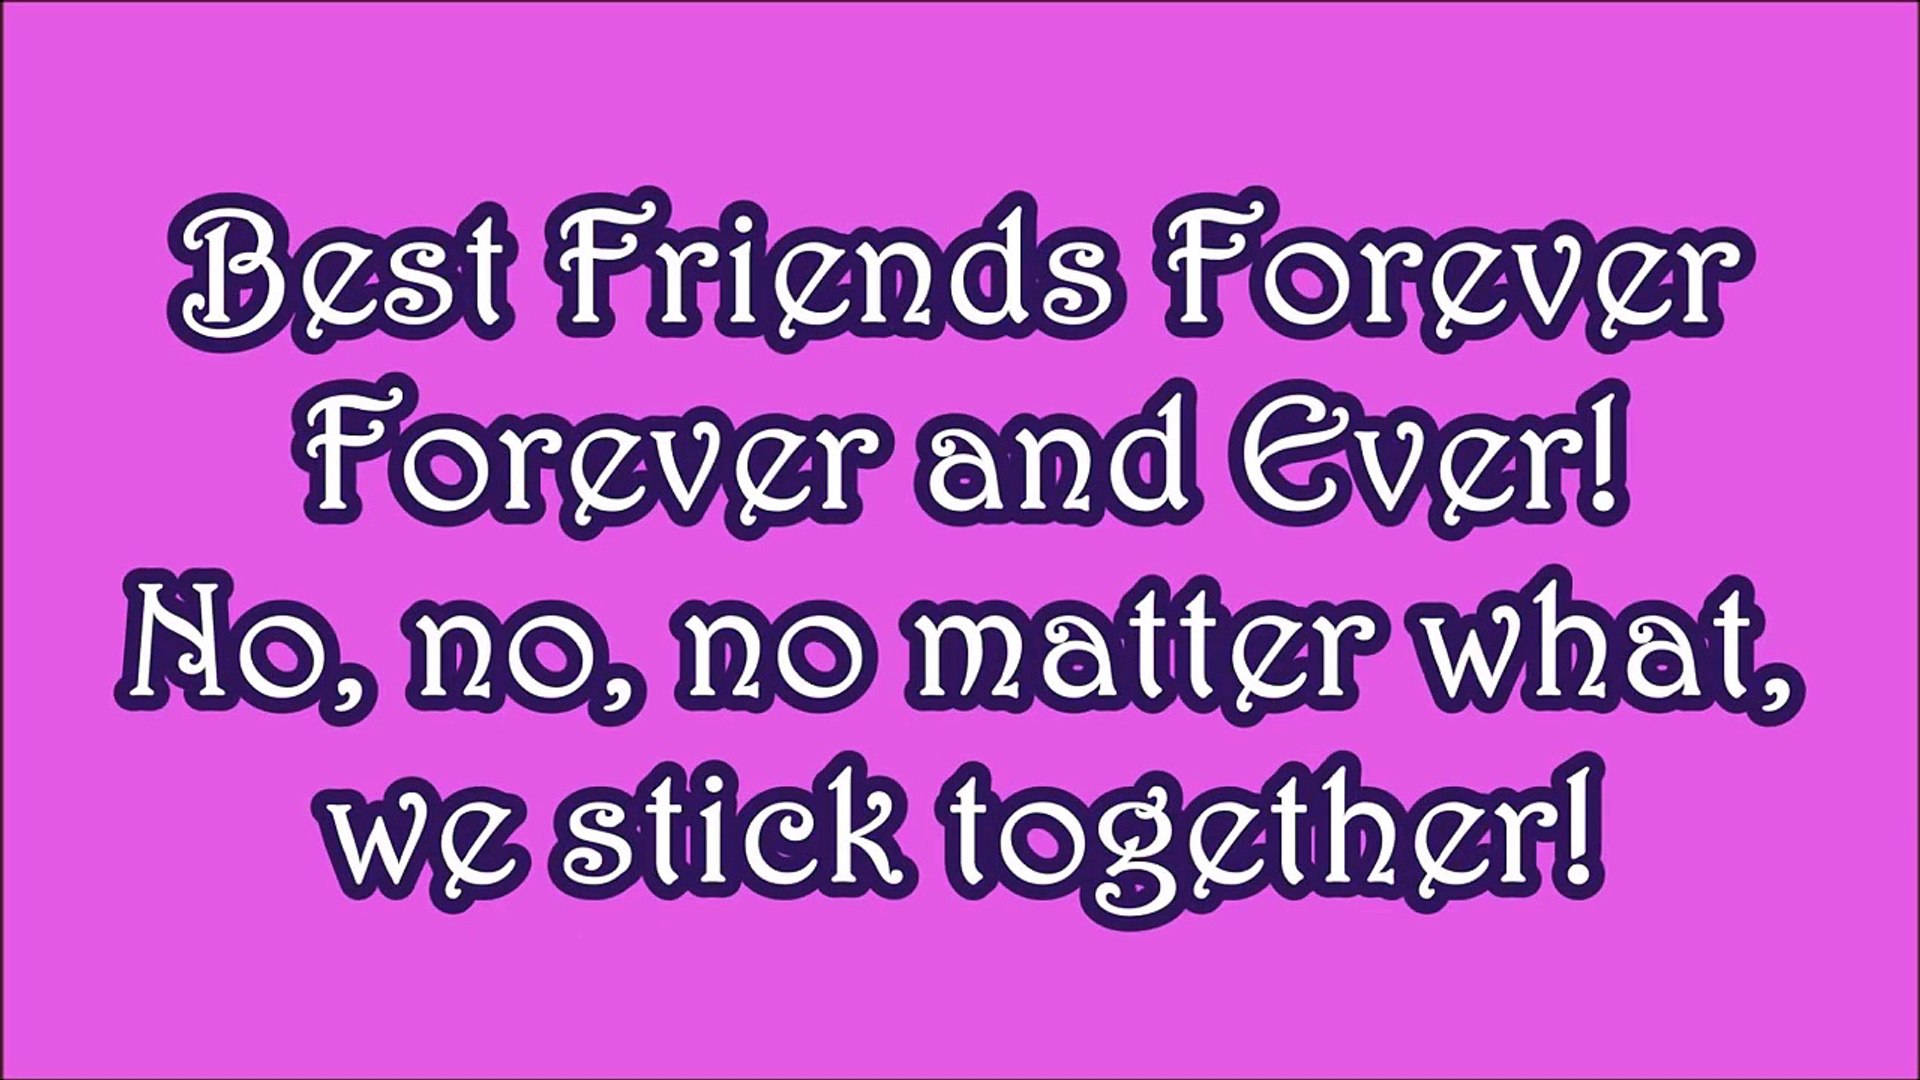 Best Friends Forever Lyrics